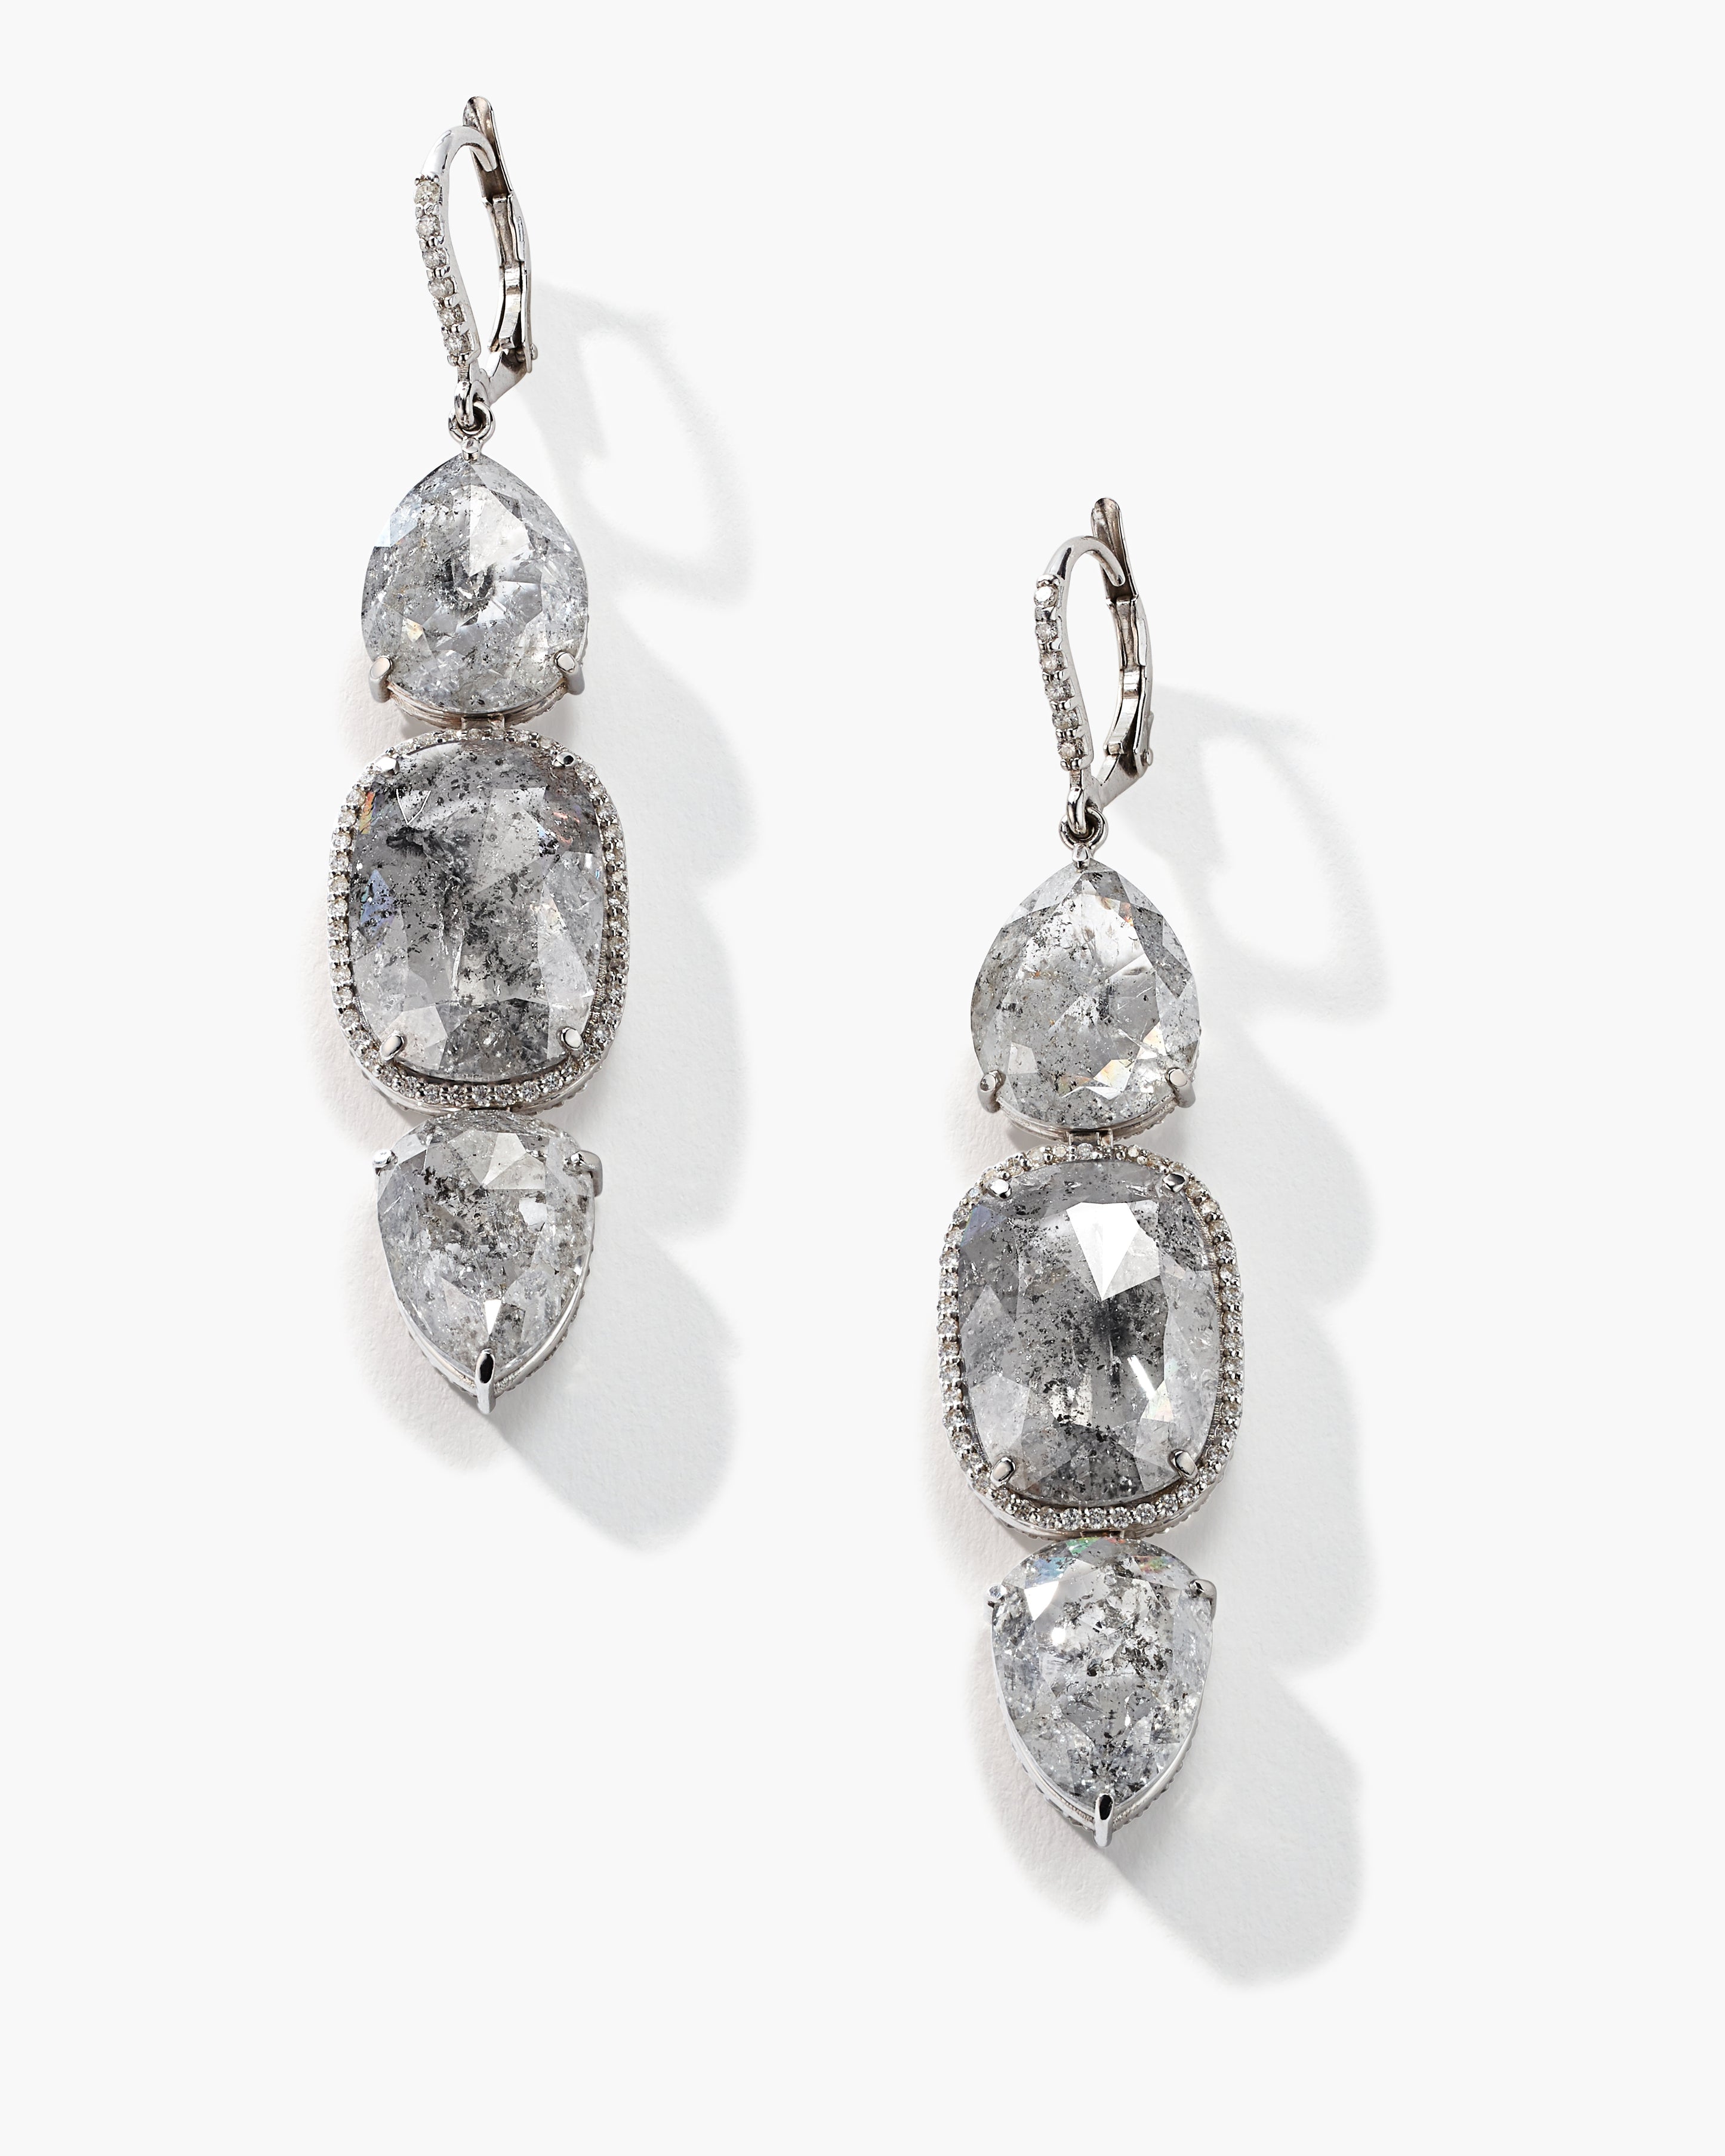 18K White Gold Rough Diamond Earrings with Pavé Diamonds